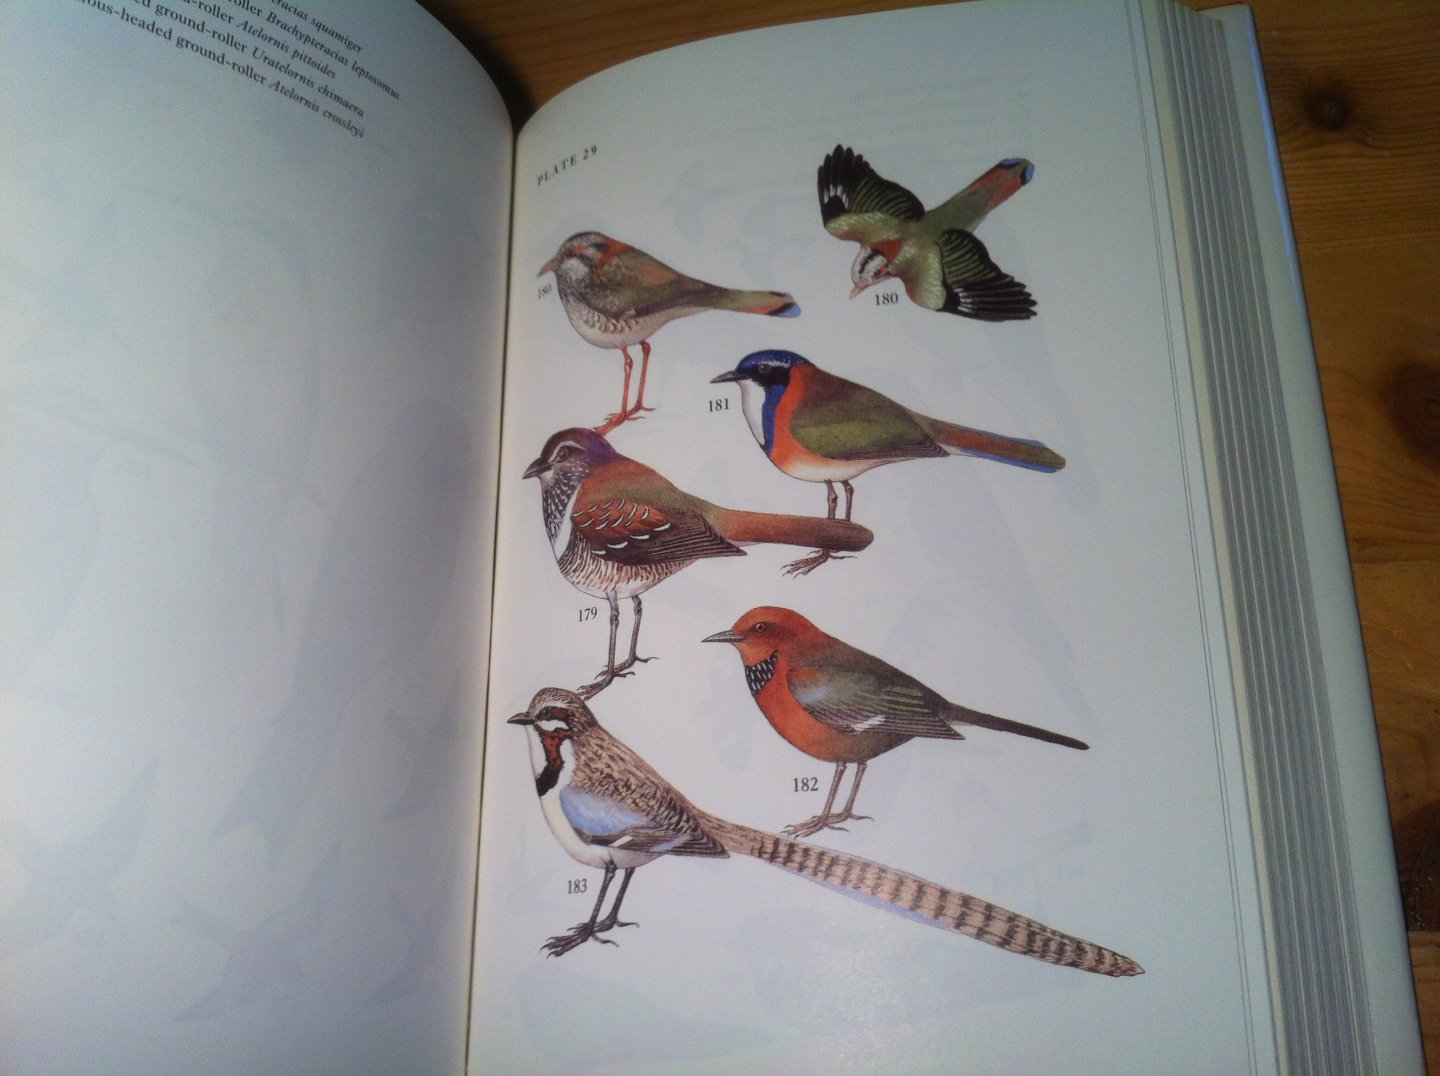 Langrand, O & V Bretagnolle - Guide to the Birds of Madagascar